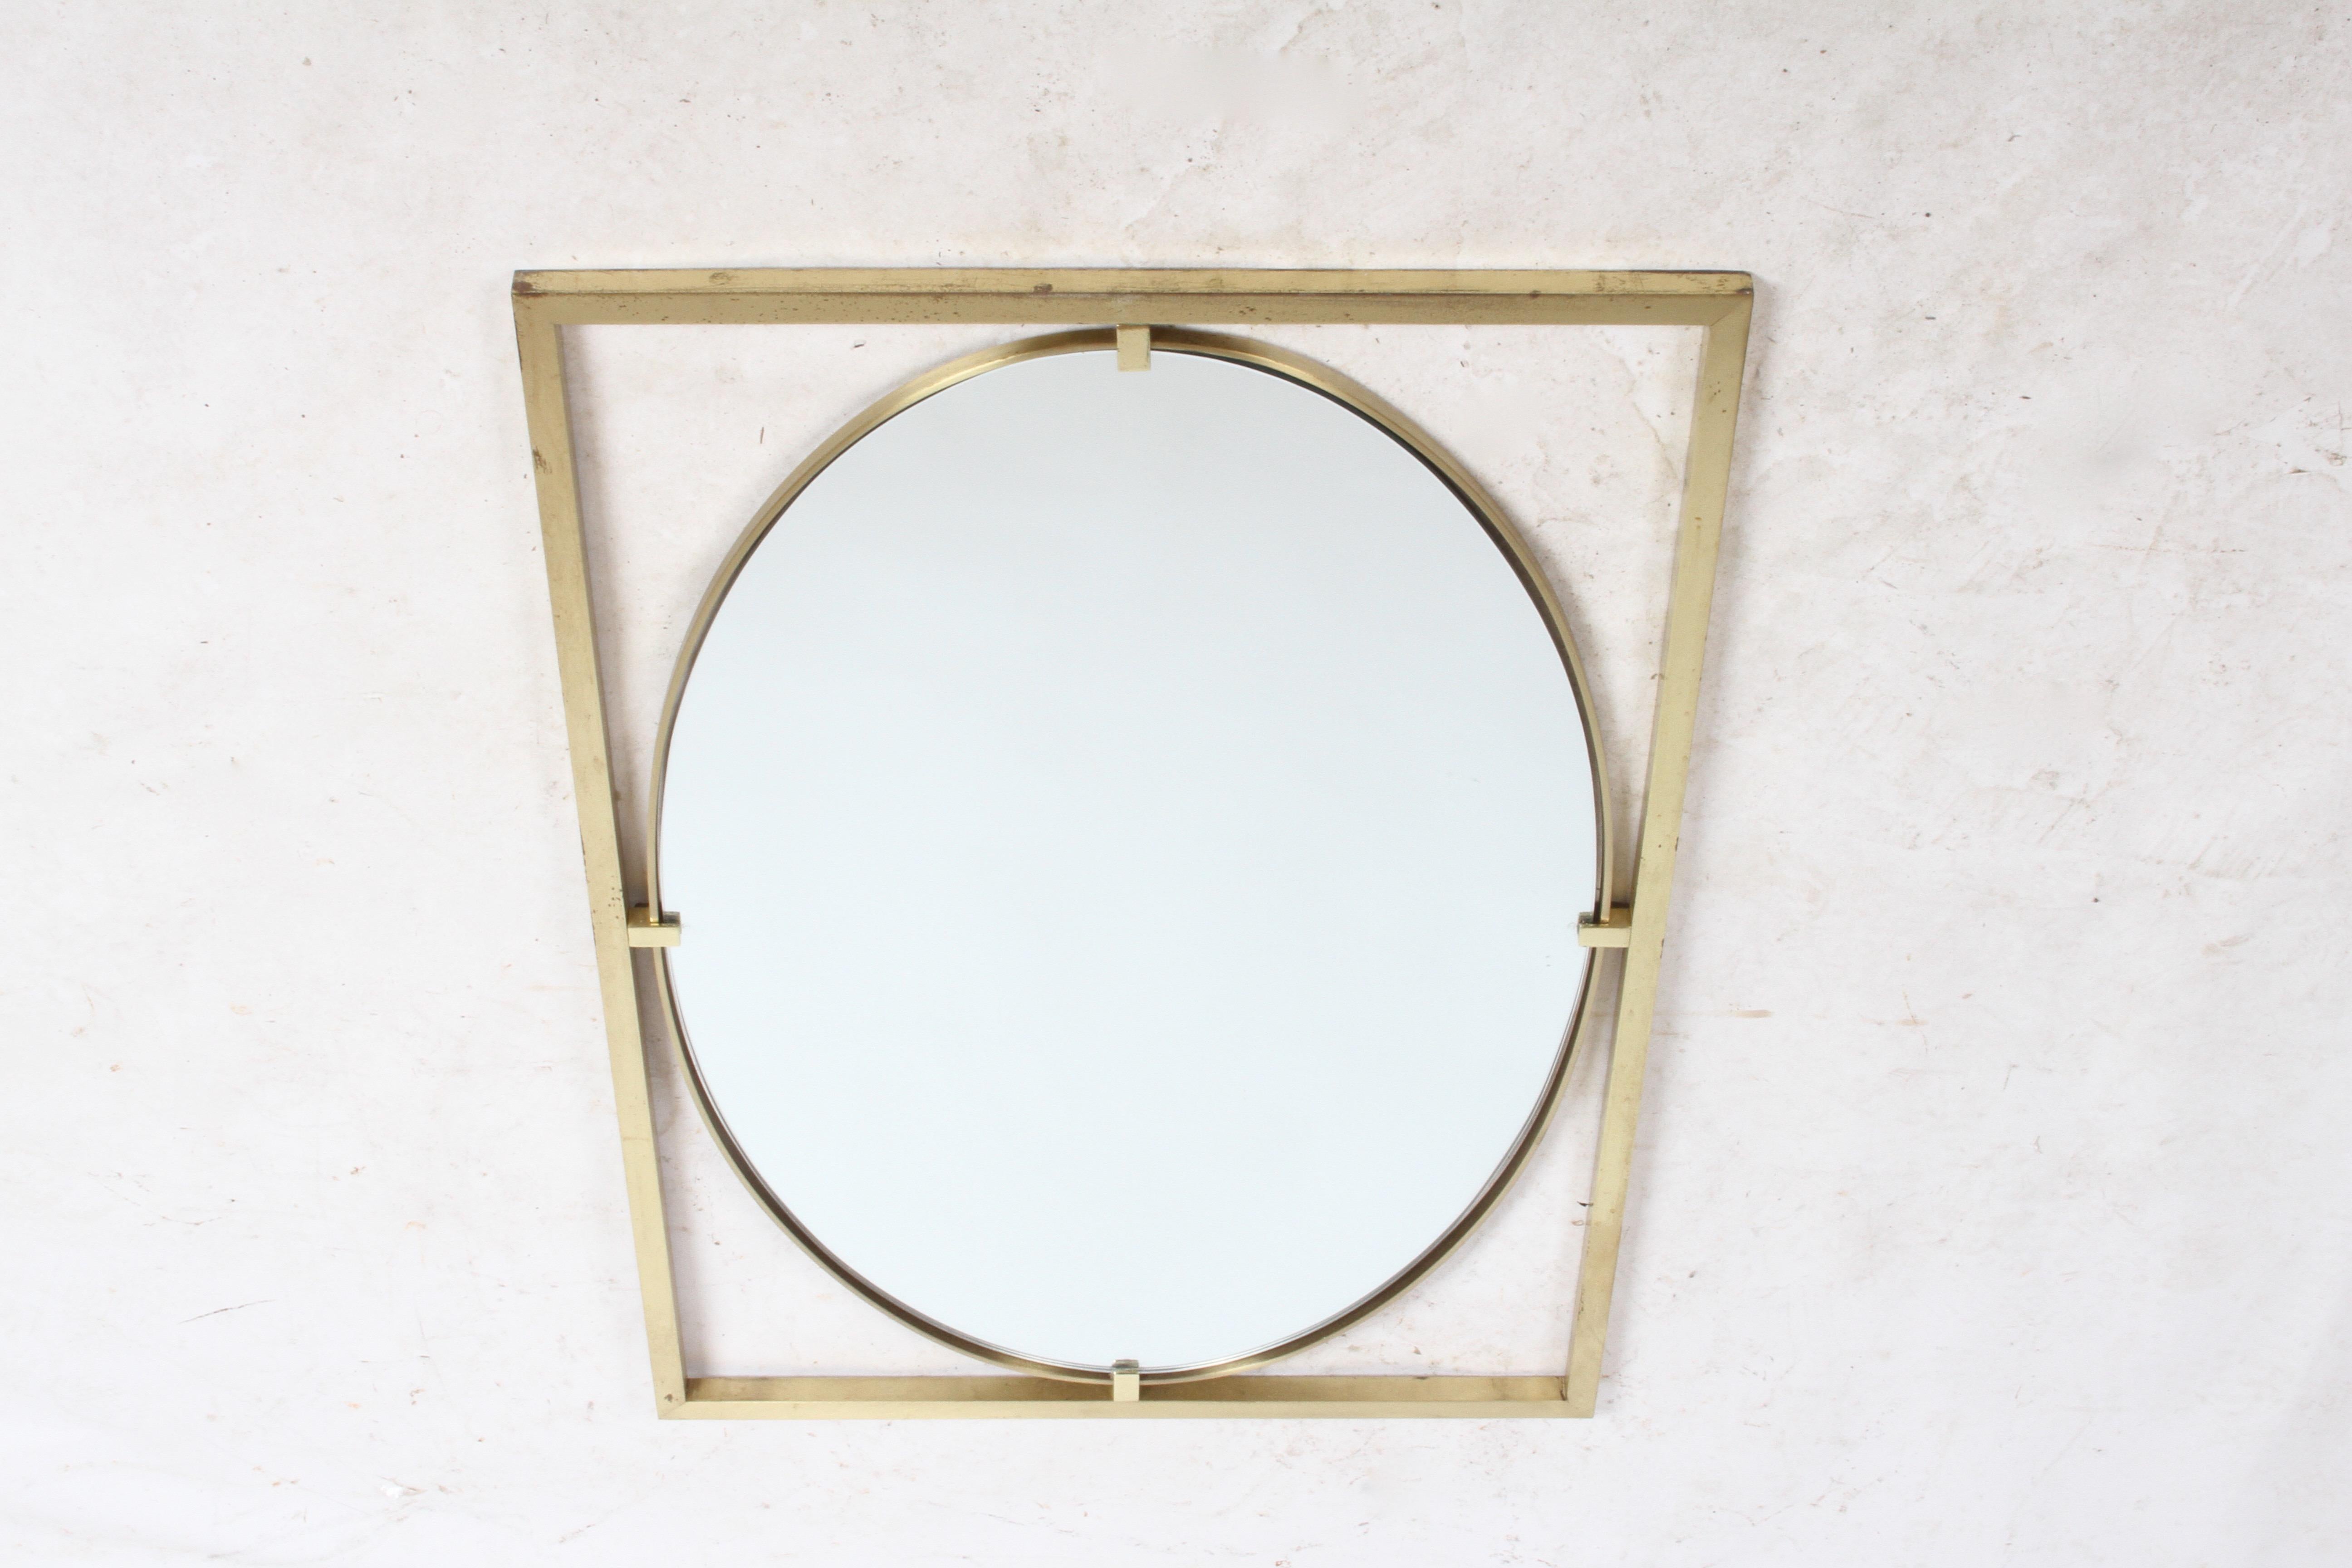 Miroir ovale dans le style Hollywood Regency par John Widdicomb, vers les années 1960. Cadre rectangulaire en laiton avec miroir ovale et bord en laiton. Montré avec la patine d'origine, peut être poli. Pas d'étiquette. Dans le style de Mastercraft.